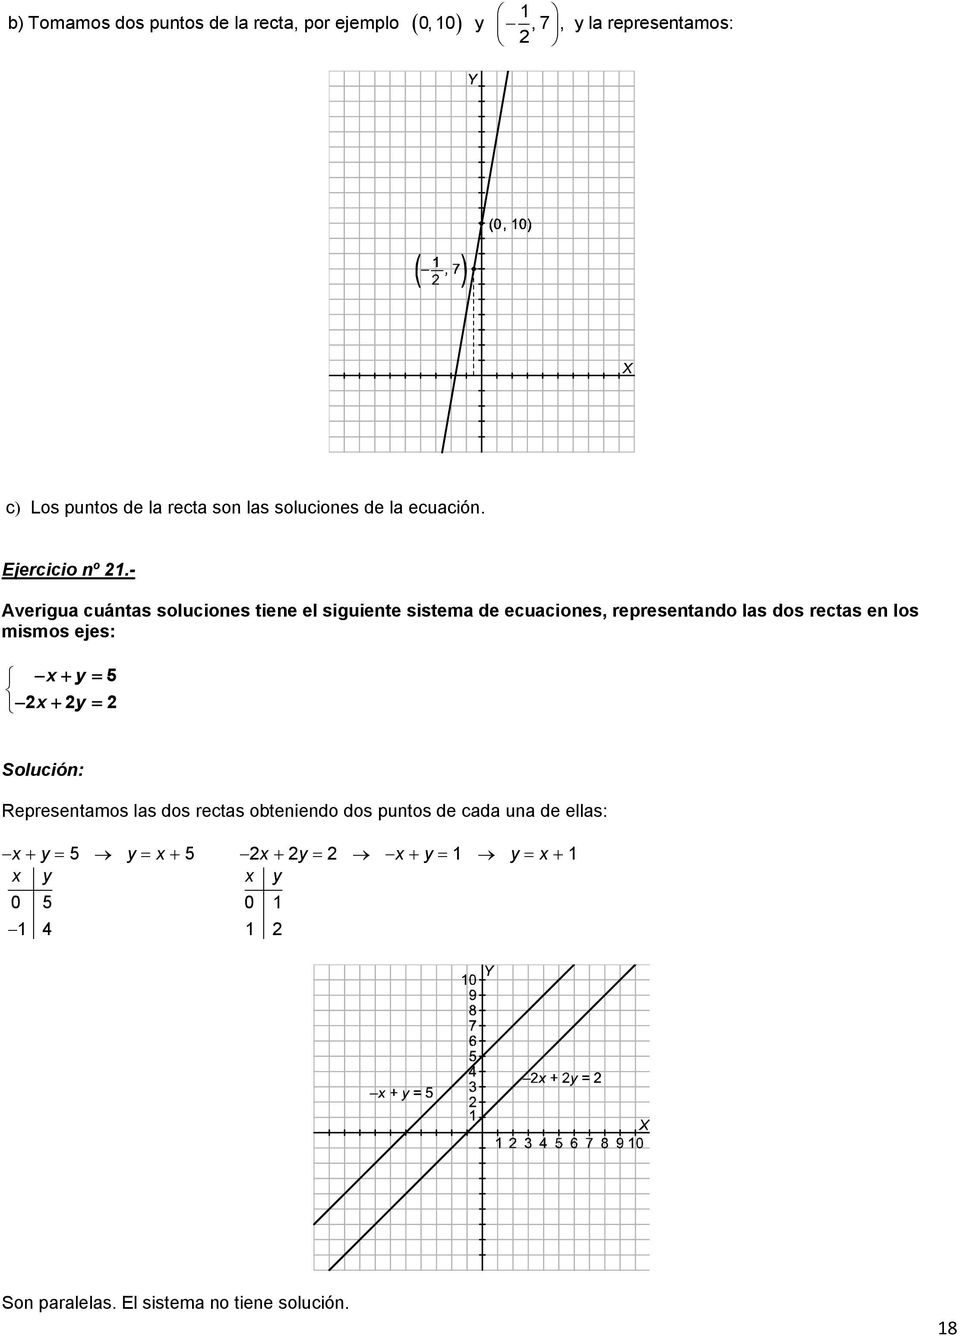 - Averigua cuántas soluciones tiene el siguiente sistema de ecuaciones, representando las dos rectas en los mismos